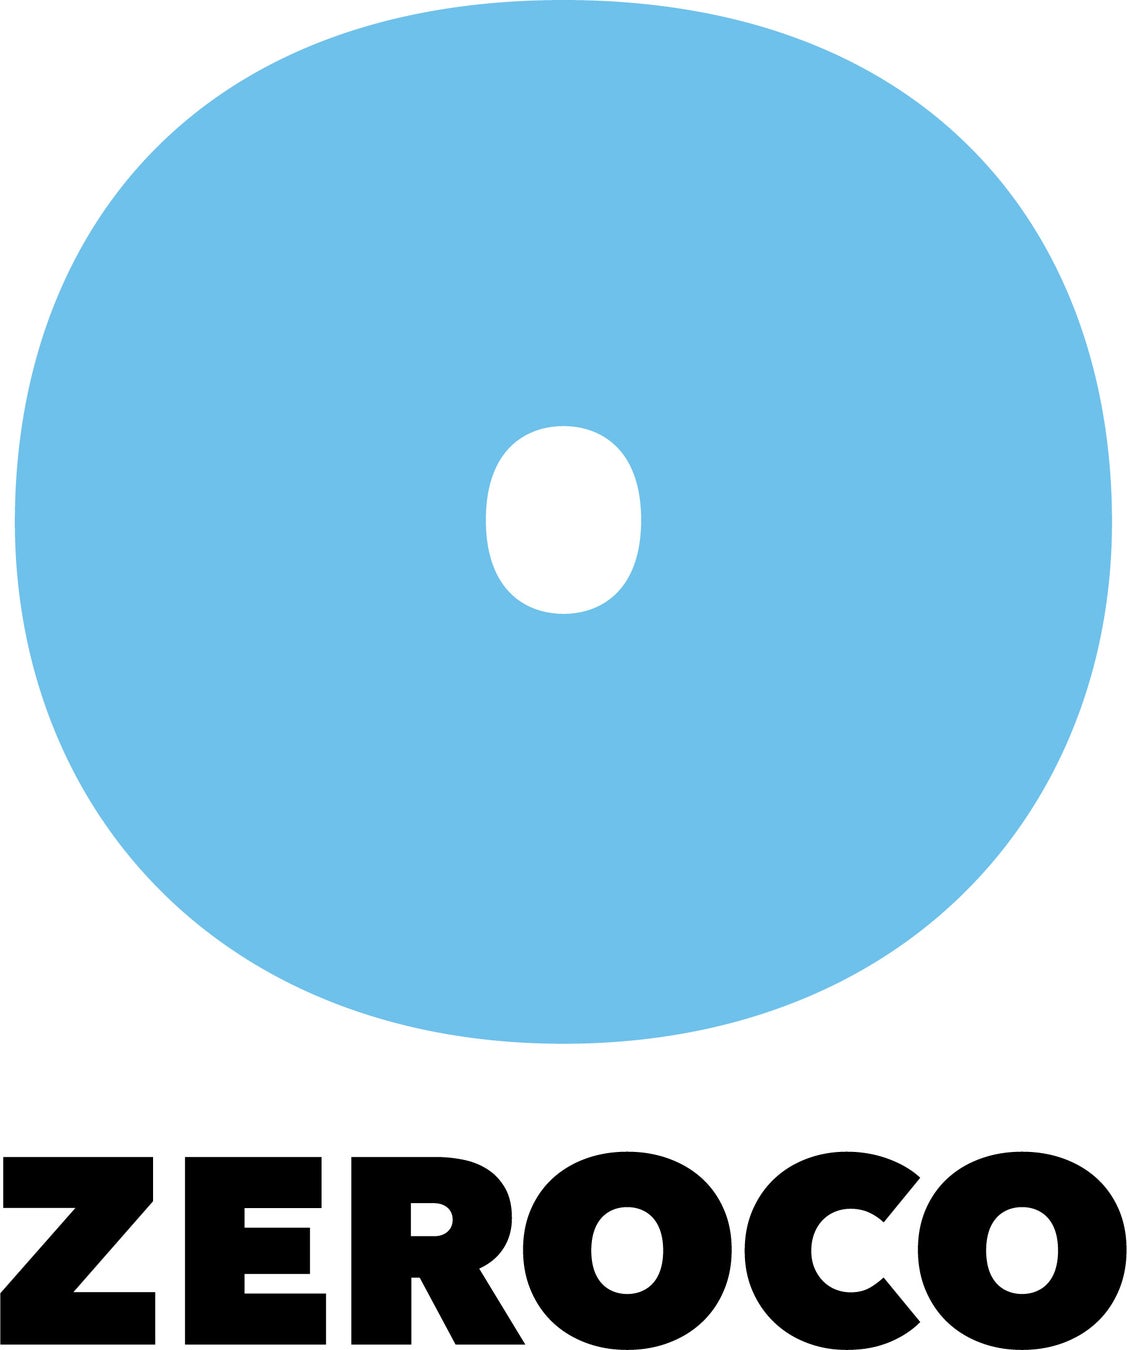 食材などの鮮度を長期間・高品質で保つ世界初の技術、第三の鮮度保持技術「ZEROCO」事業が始動のサブ画像1